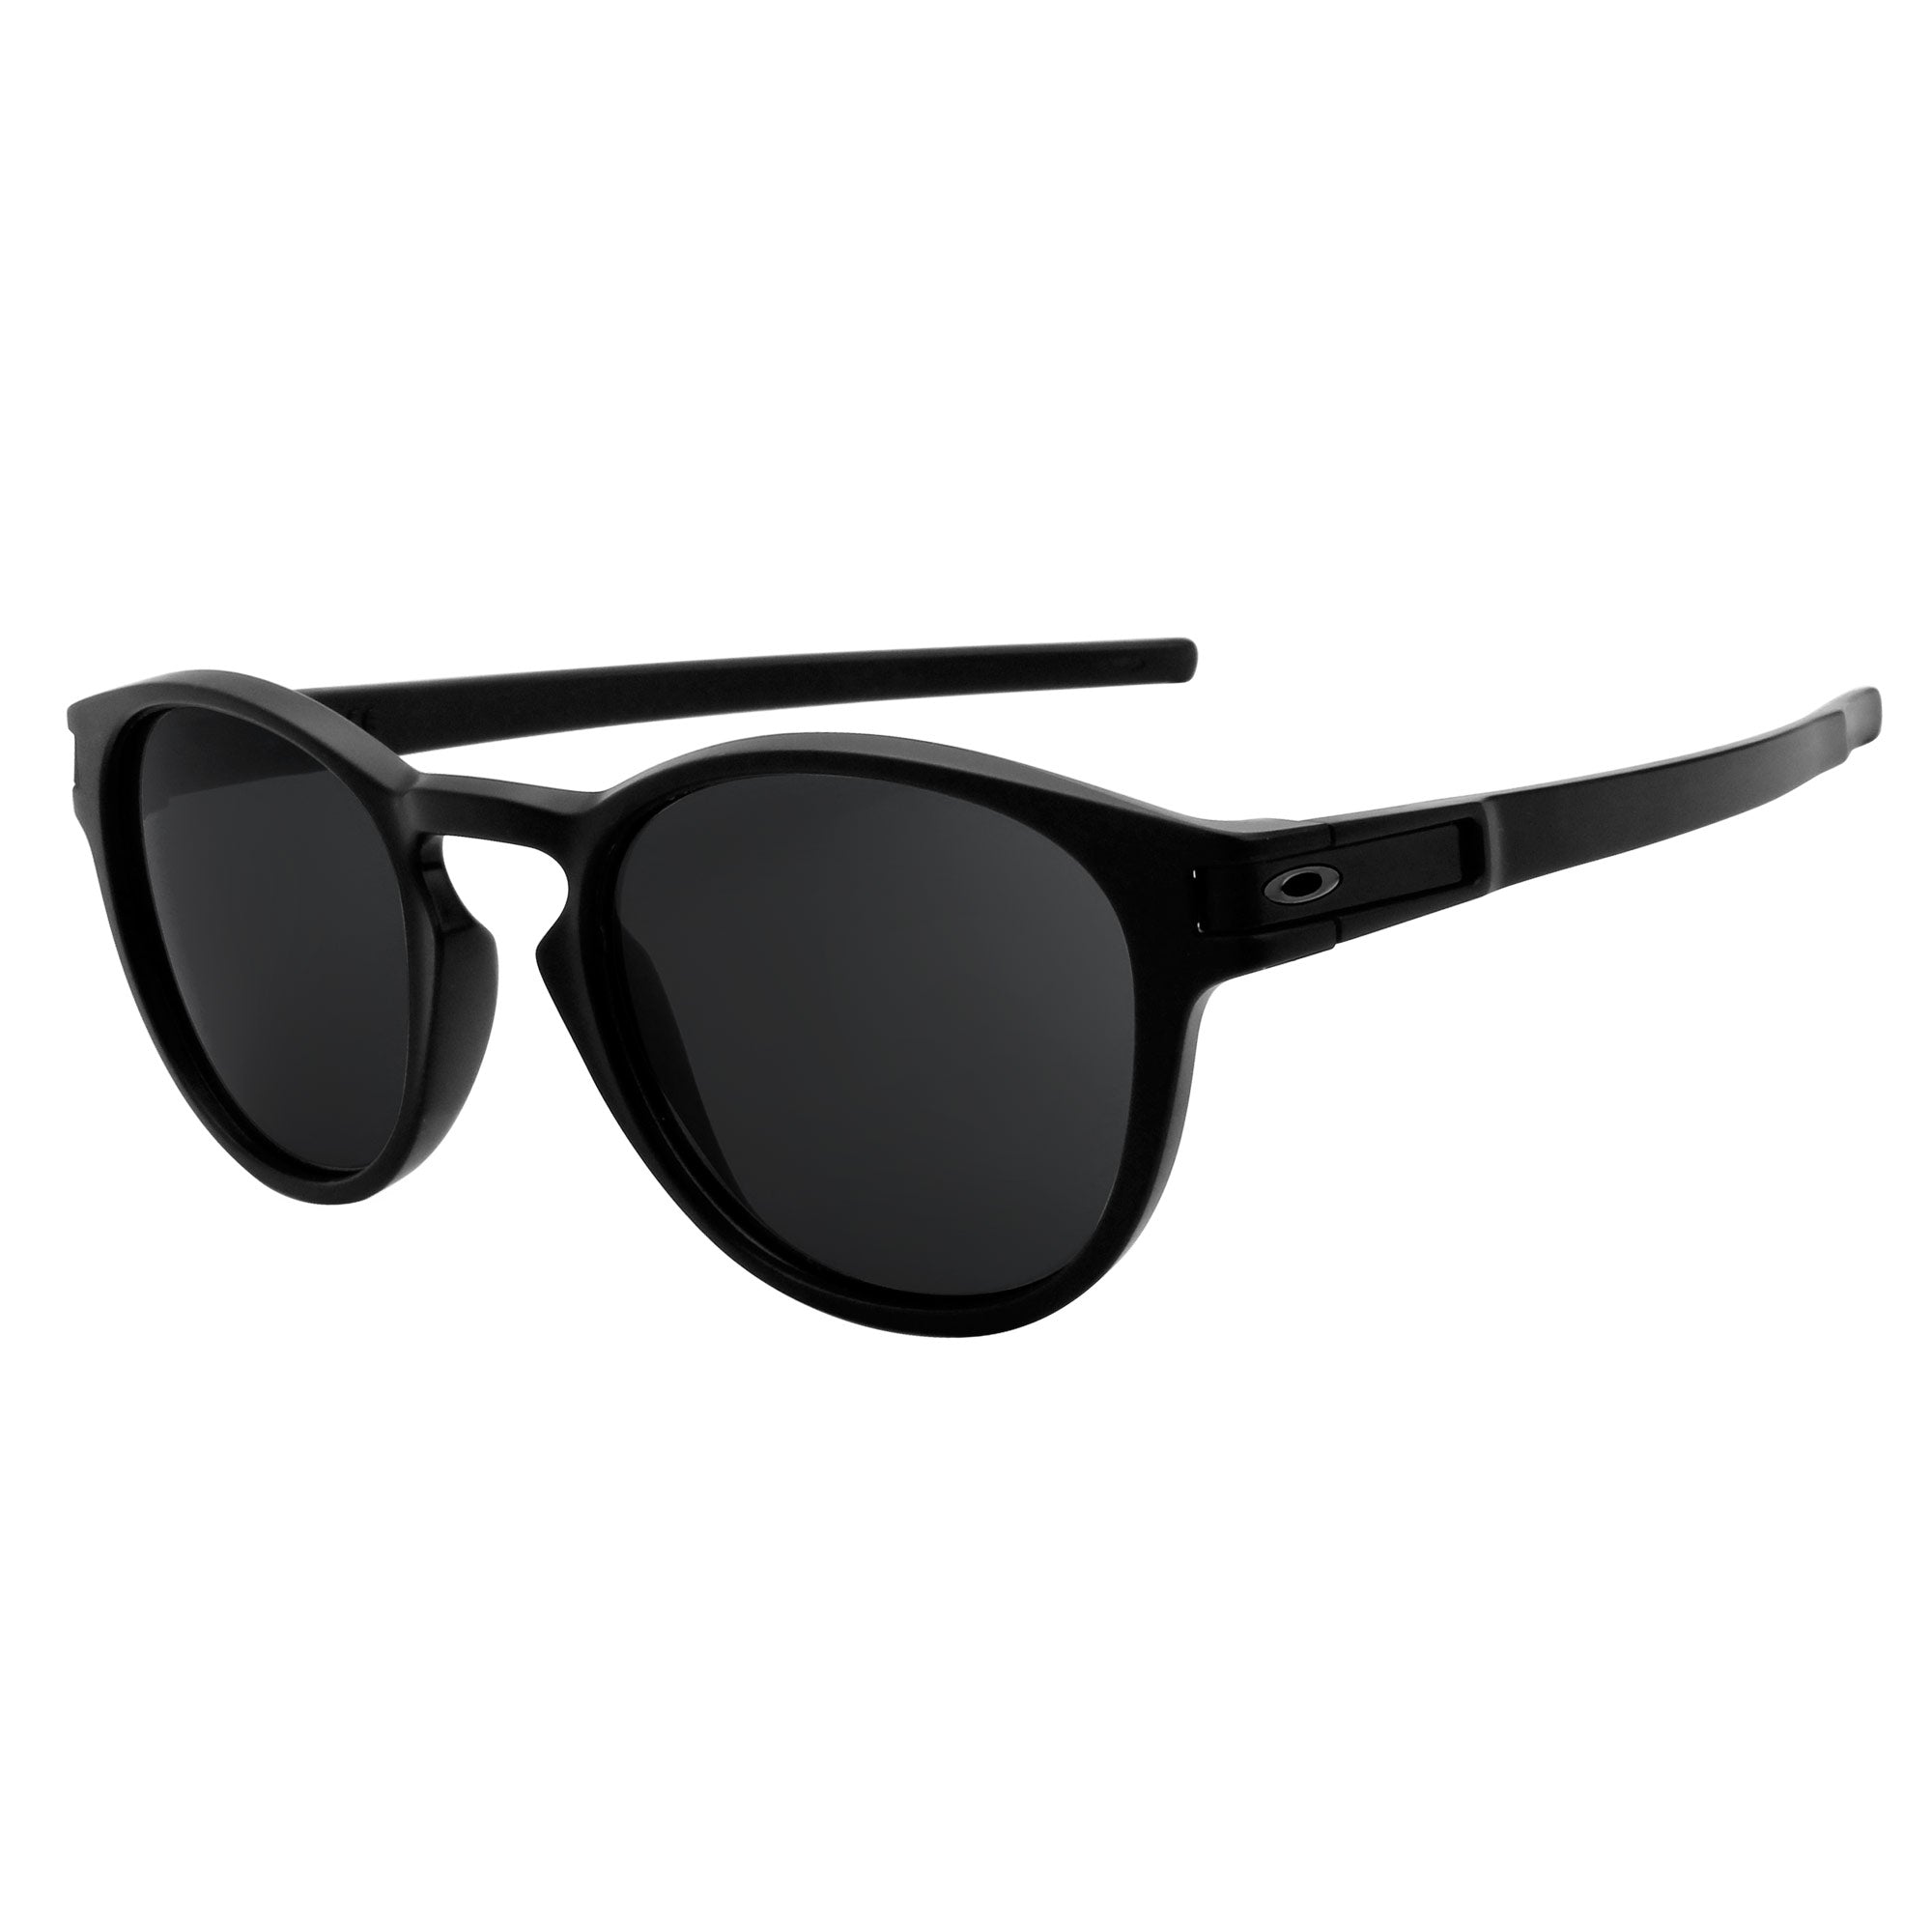 Women's Oakley Sunglasses | John Lewis & Partners